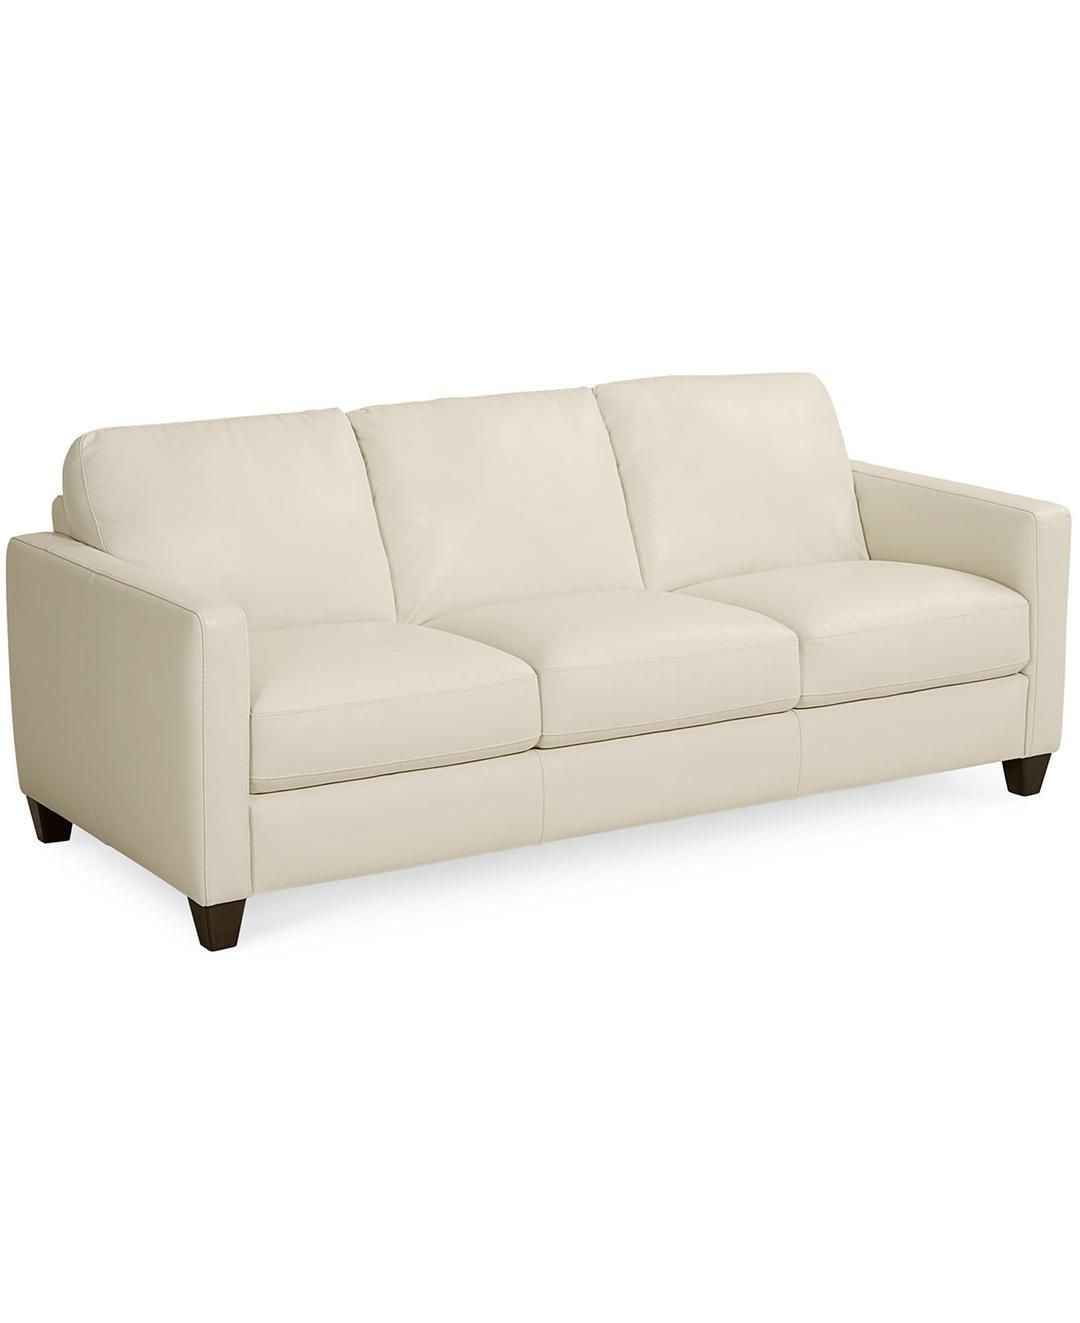 Sofas Center : Impressive Macys Leather Sofa Image Ideas Blair Throughout Macys Sofas (View 12 of 20)